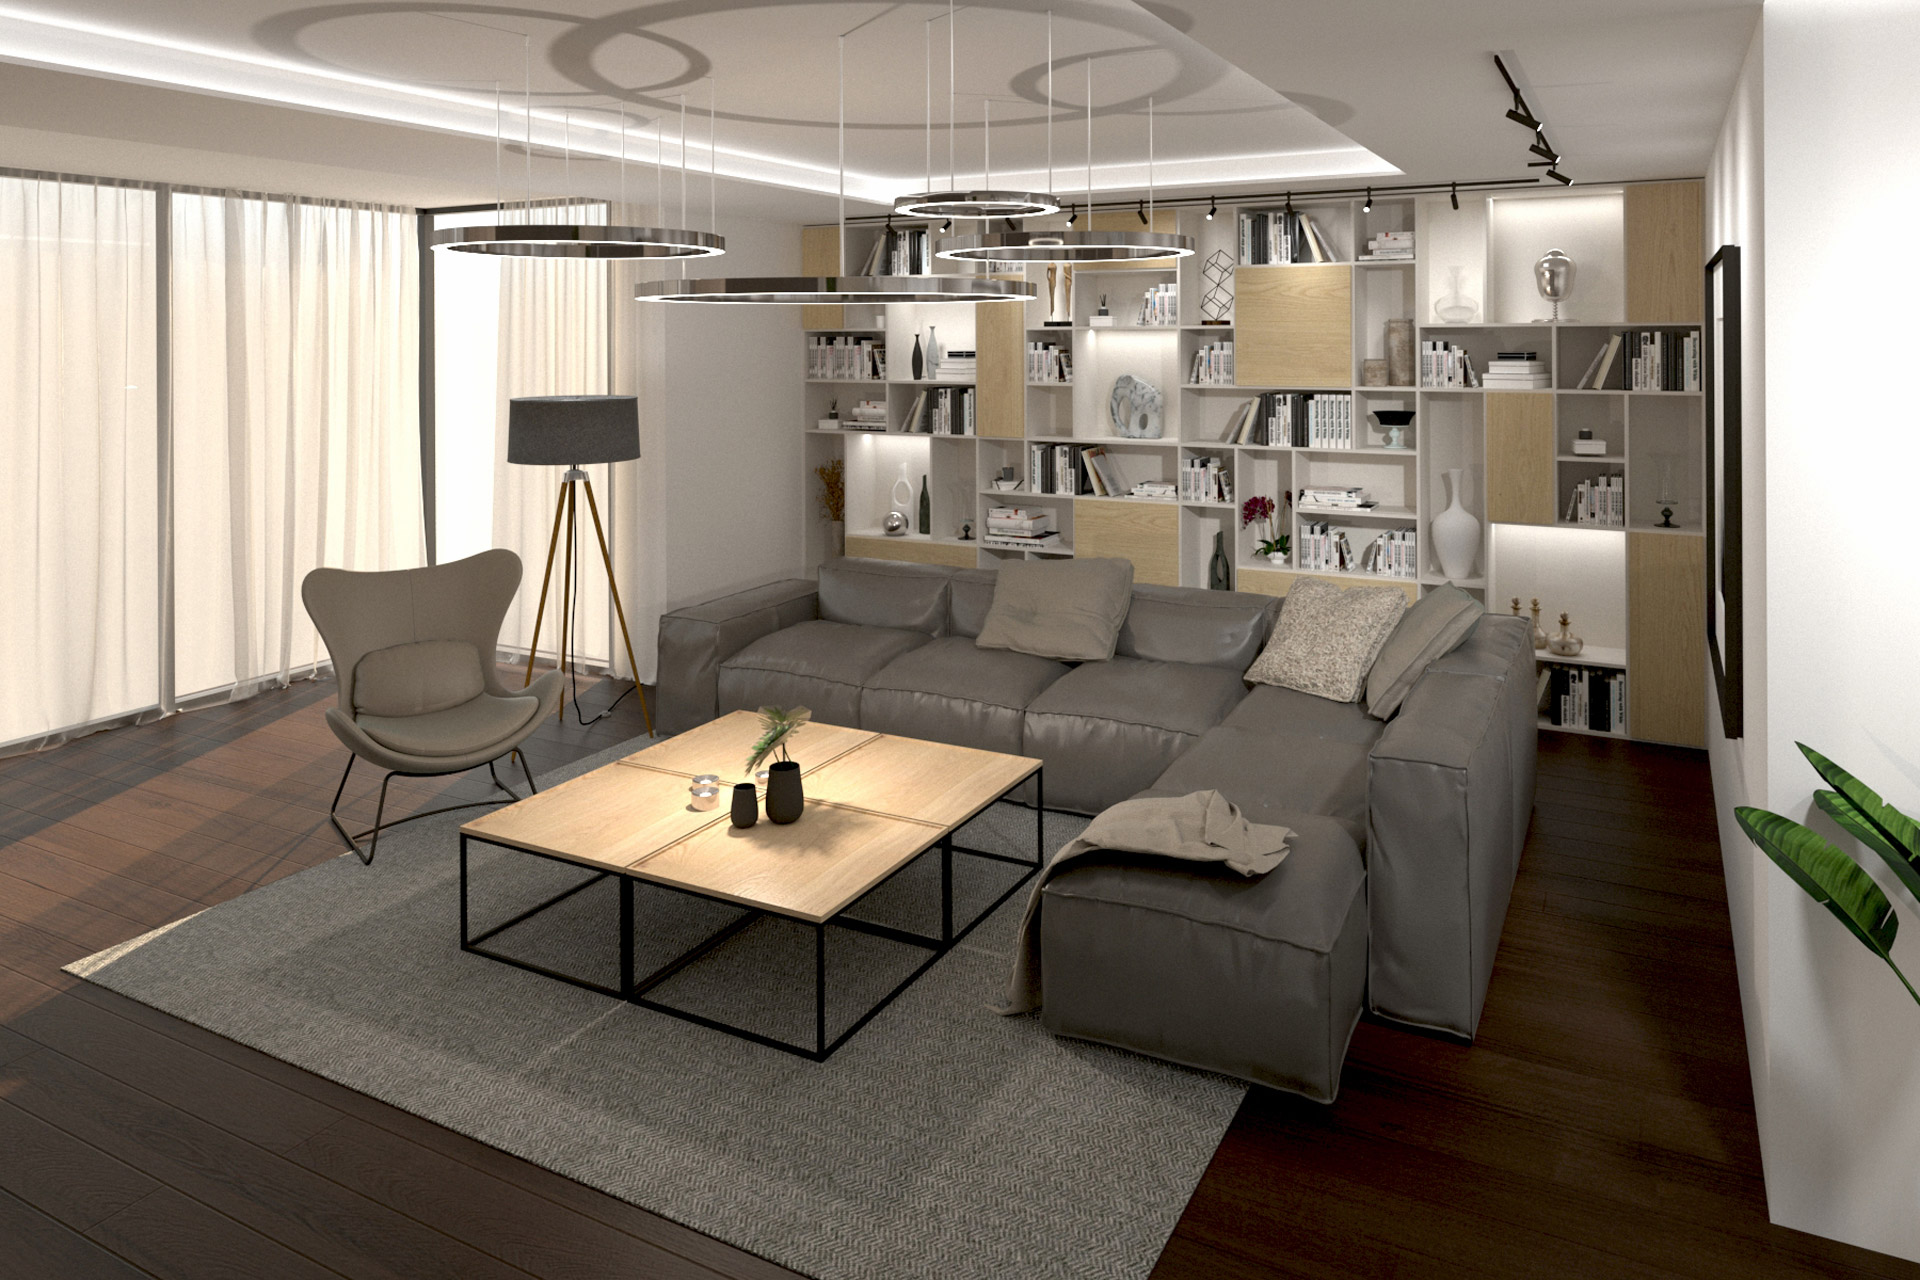 Hanak Modern interior design of the house Living room